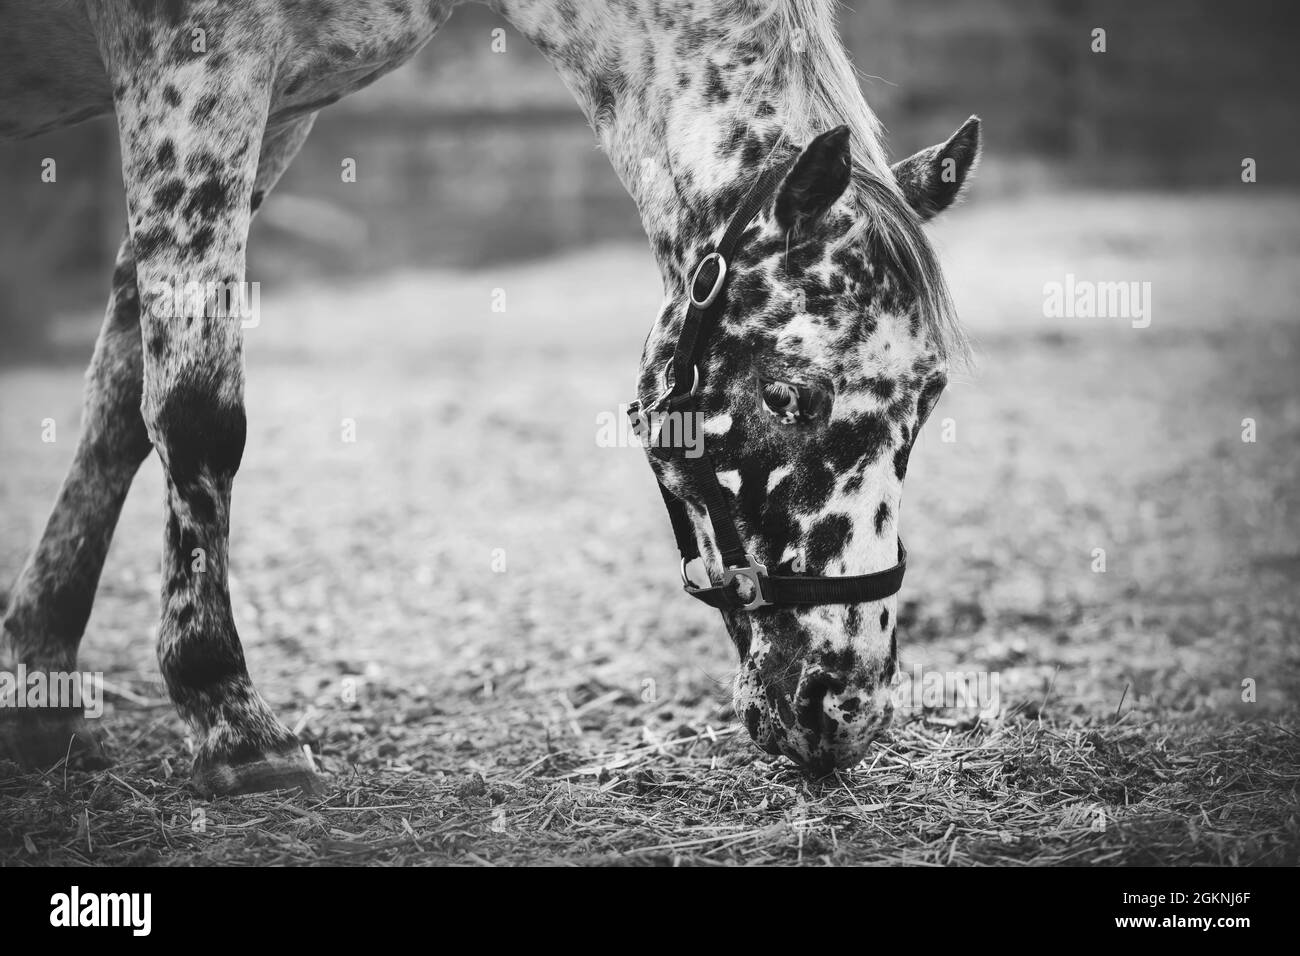 Ein schwarz-weißes Bild eines schönen gefleckten Pferdes, das auf einer Wiese grast und Heu frisst. Viehzucht und Landwirtschaft. Stockfoto